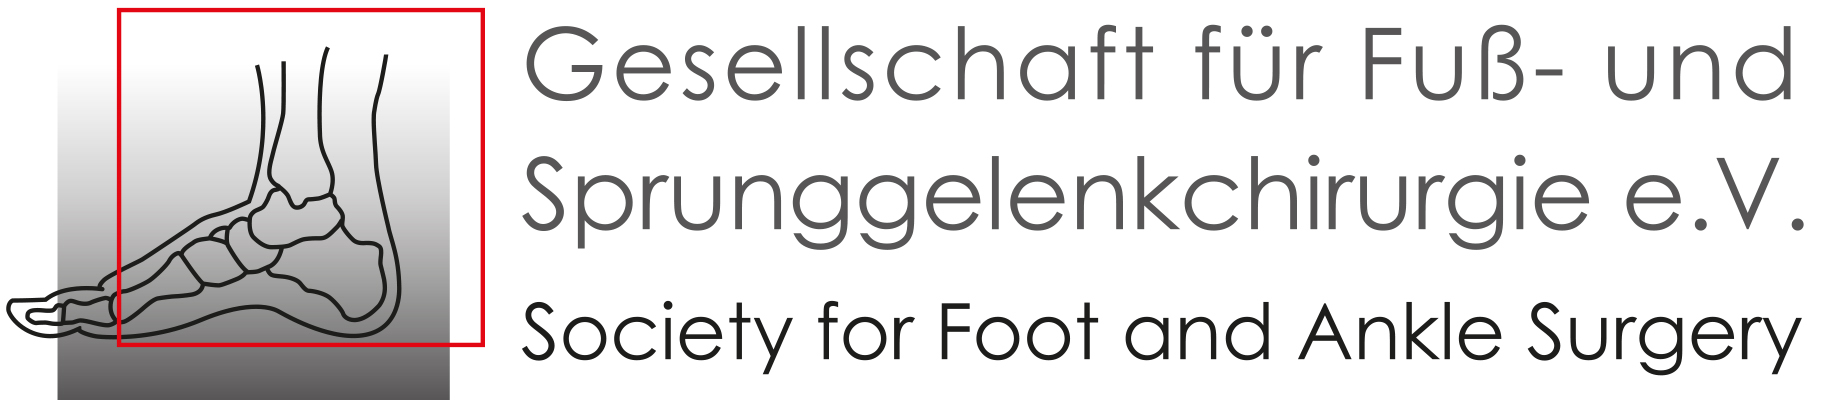 GFFC Gesellschaft für Fuß- und Sprunggelenkchirurgie e.V.